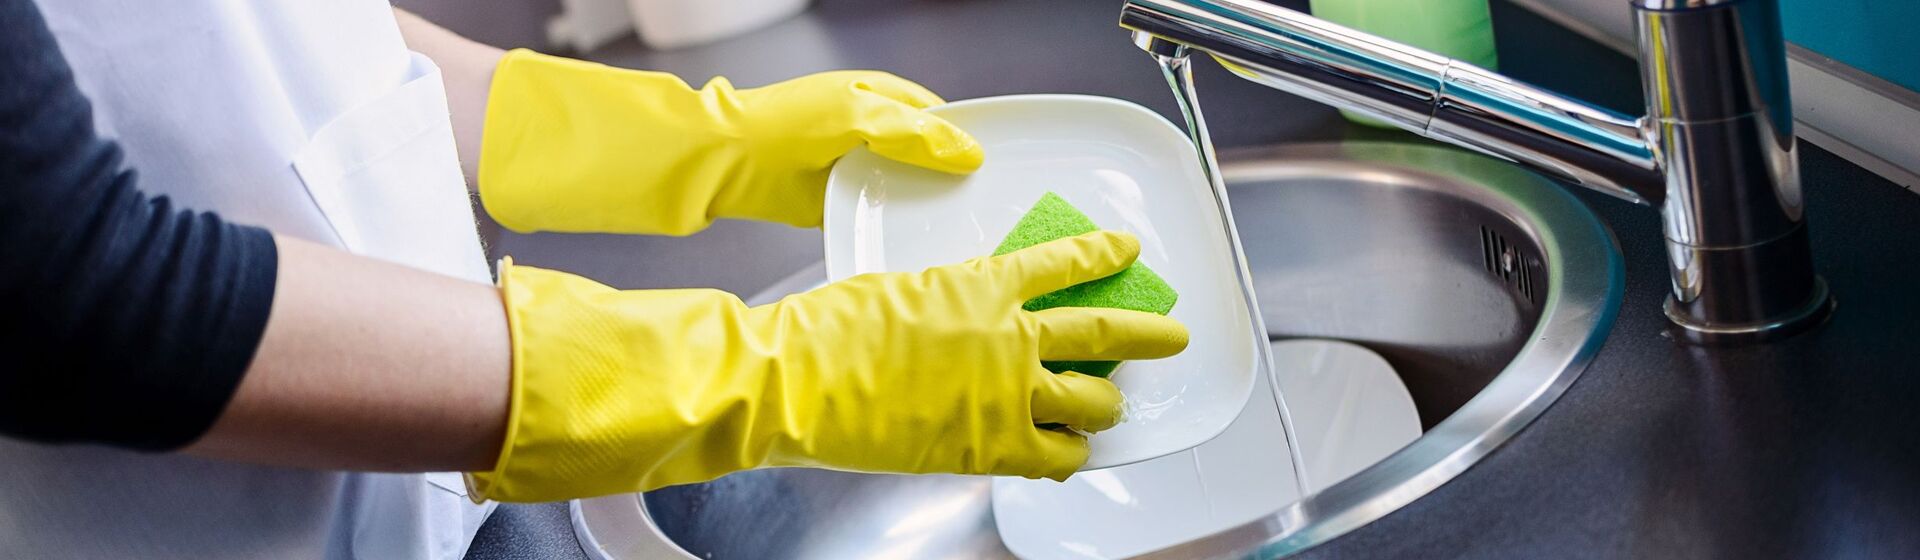 Насколько эффективны экологичные средства для мытья посуды?